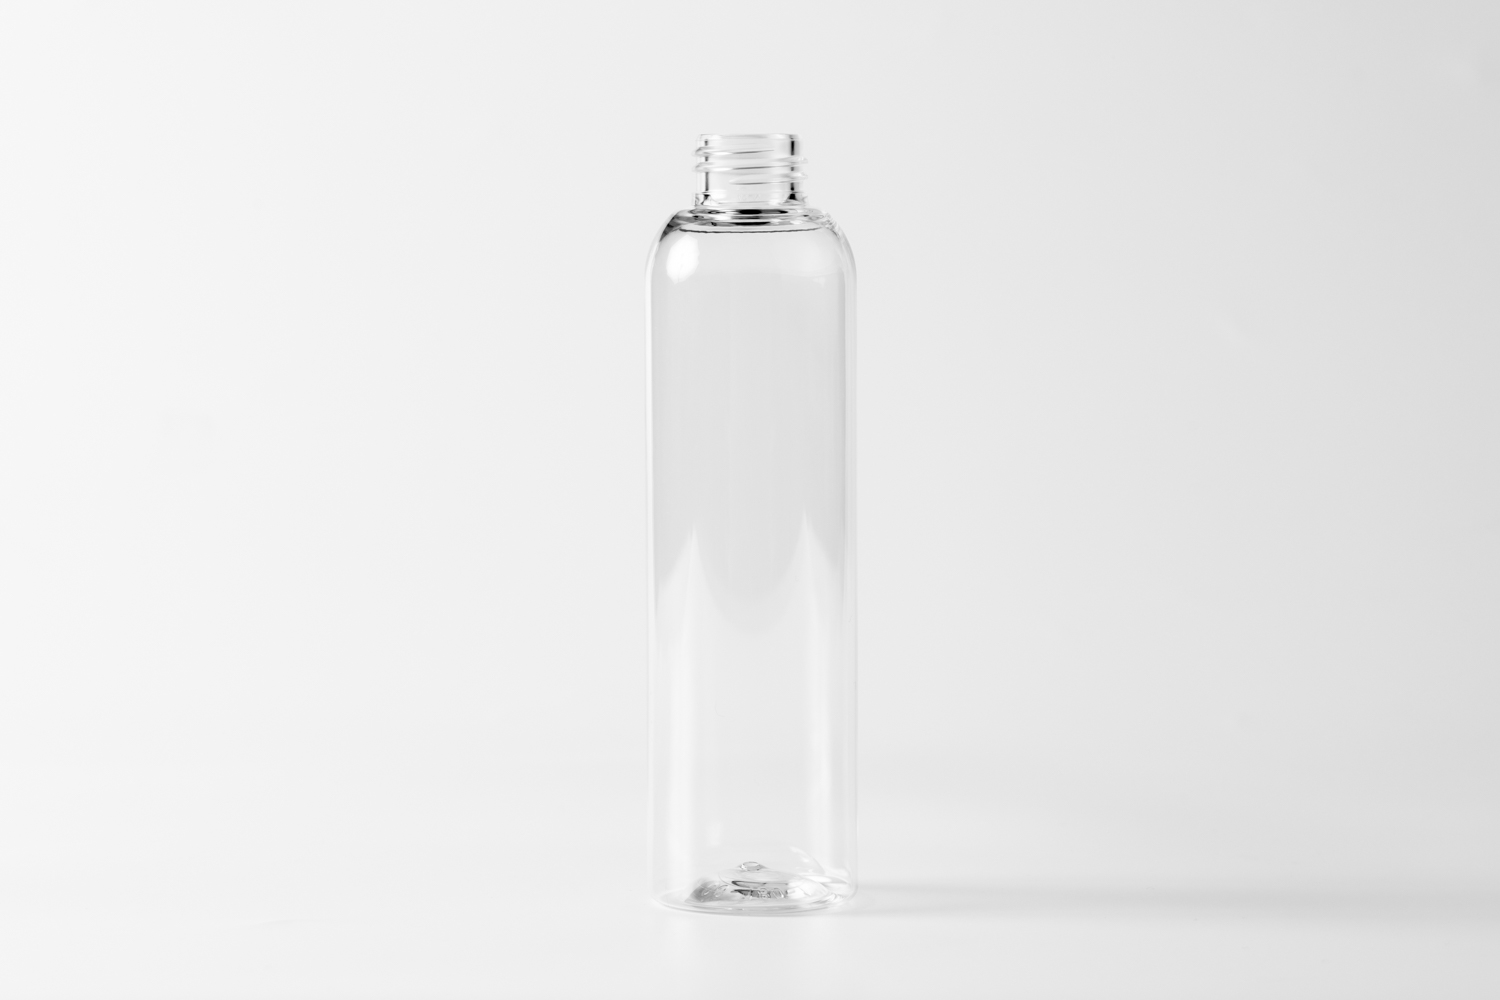 【化粧品容器】小ロット在庫対応の標準ナチュラル仕様ボトル SB08-180C〈プラスチック〉